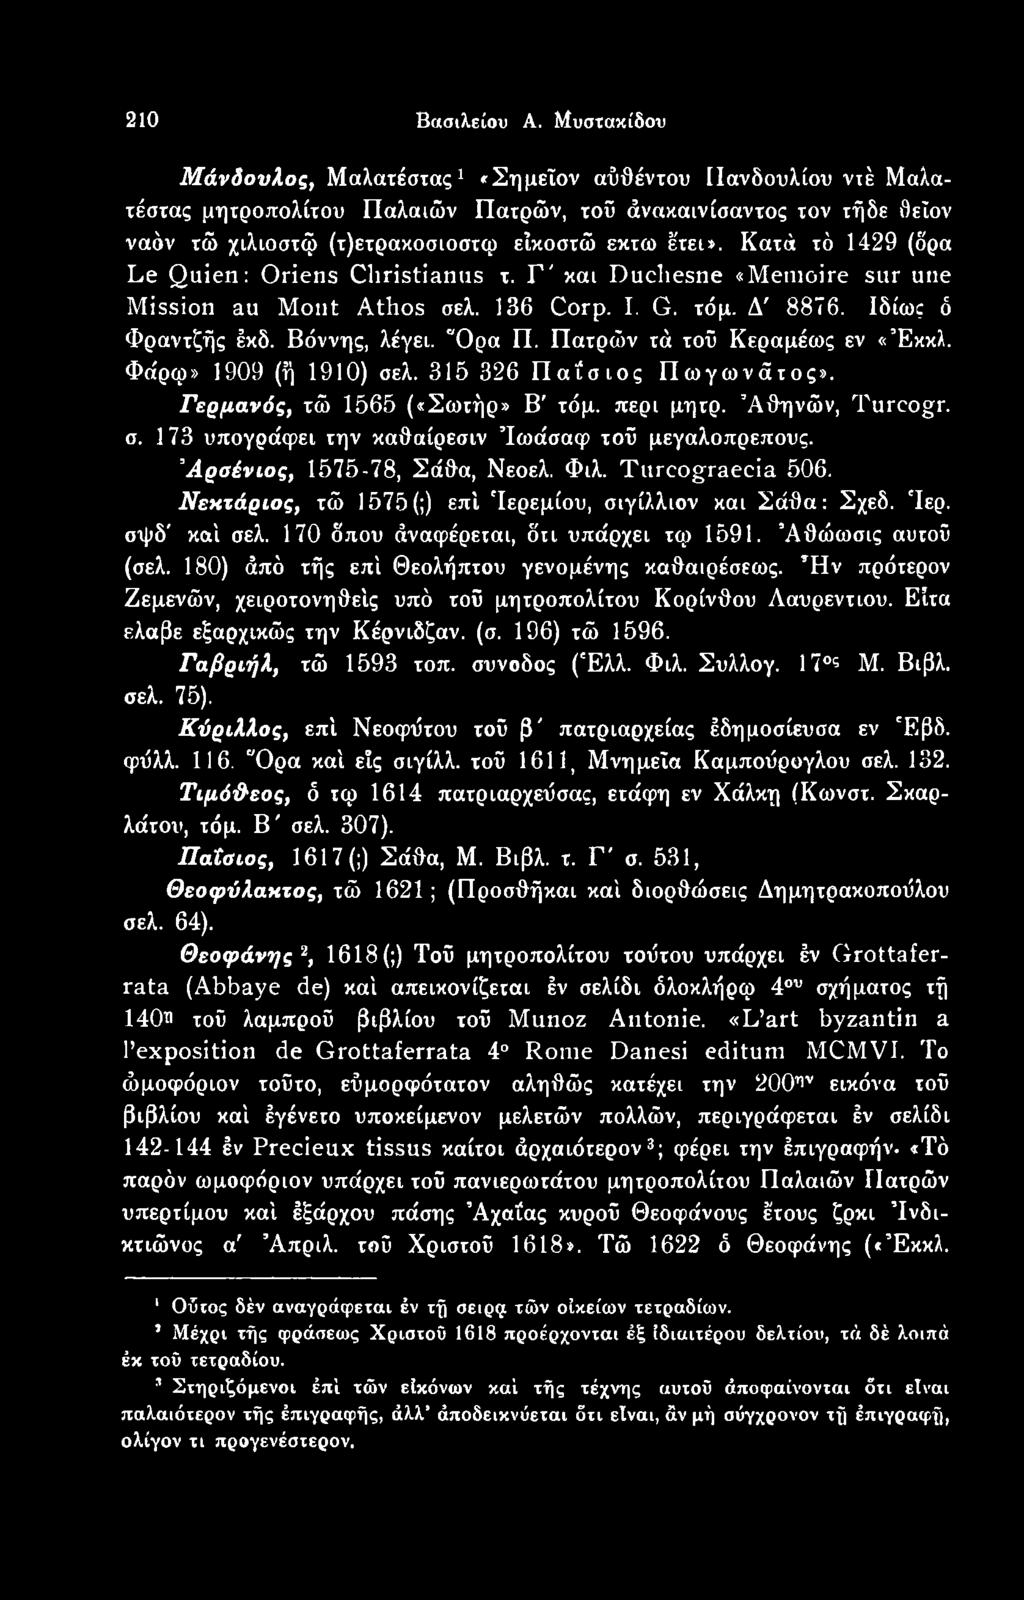 Αρσένιος, 1575-78, Σάθα, Νεοελ. Φιλ. Tureogτaecia 506. Νεκτάριος, τώ 1575(;) επί Τερεμίου, σιγίλλιον και Σάθα: Σχεδ. 'Ιερ. σψδ' καί σελ. 170 δπου άναφέρεται, δτι υπάρχει τφ 1591. Άθώωσις αυτού (σελ.